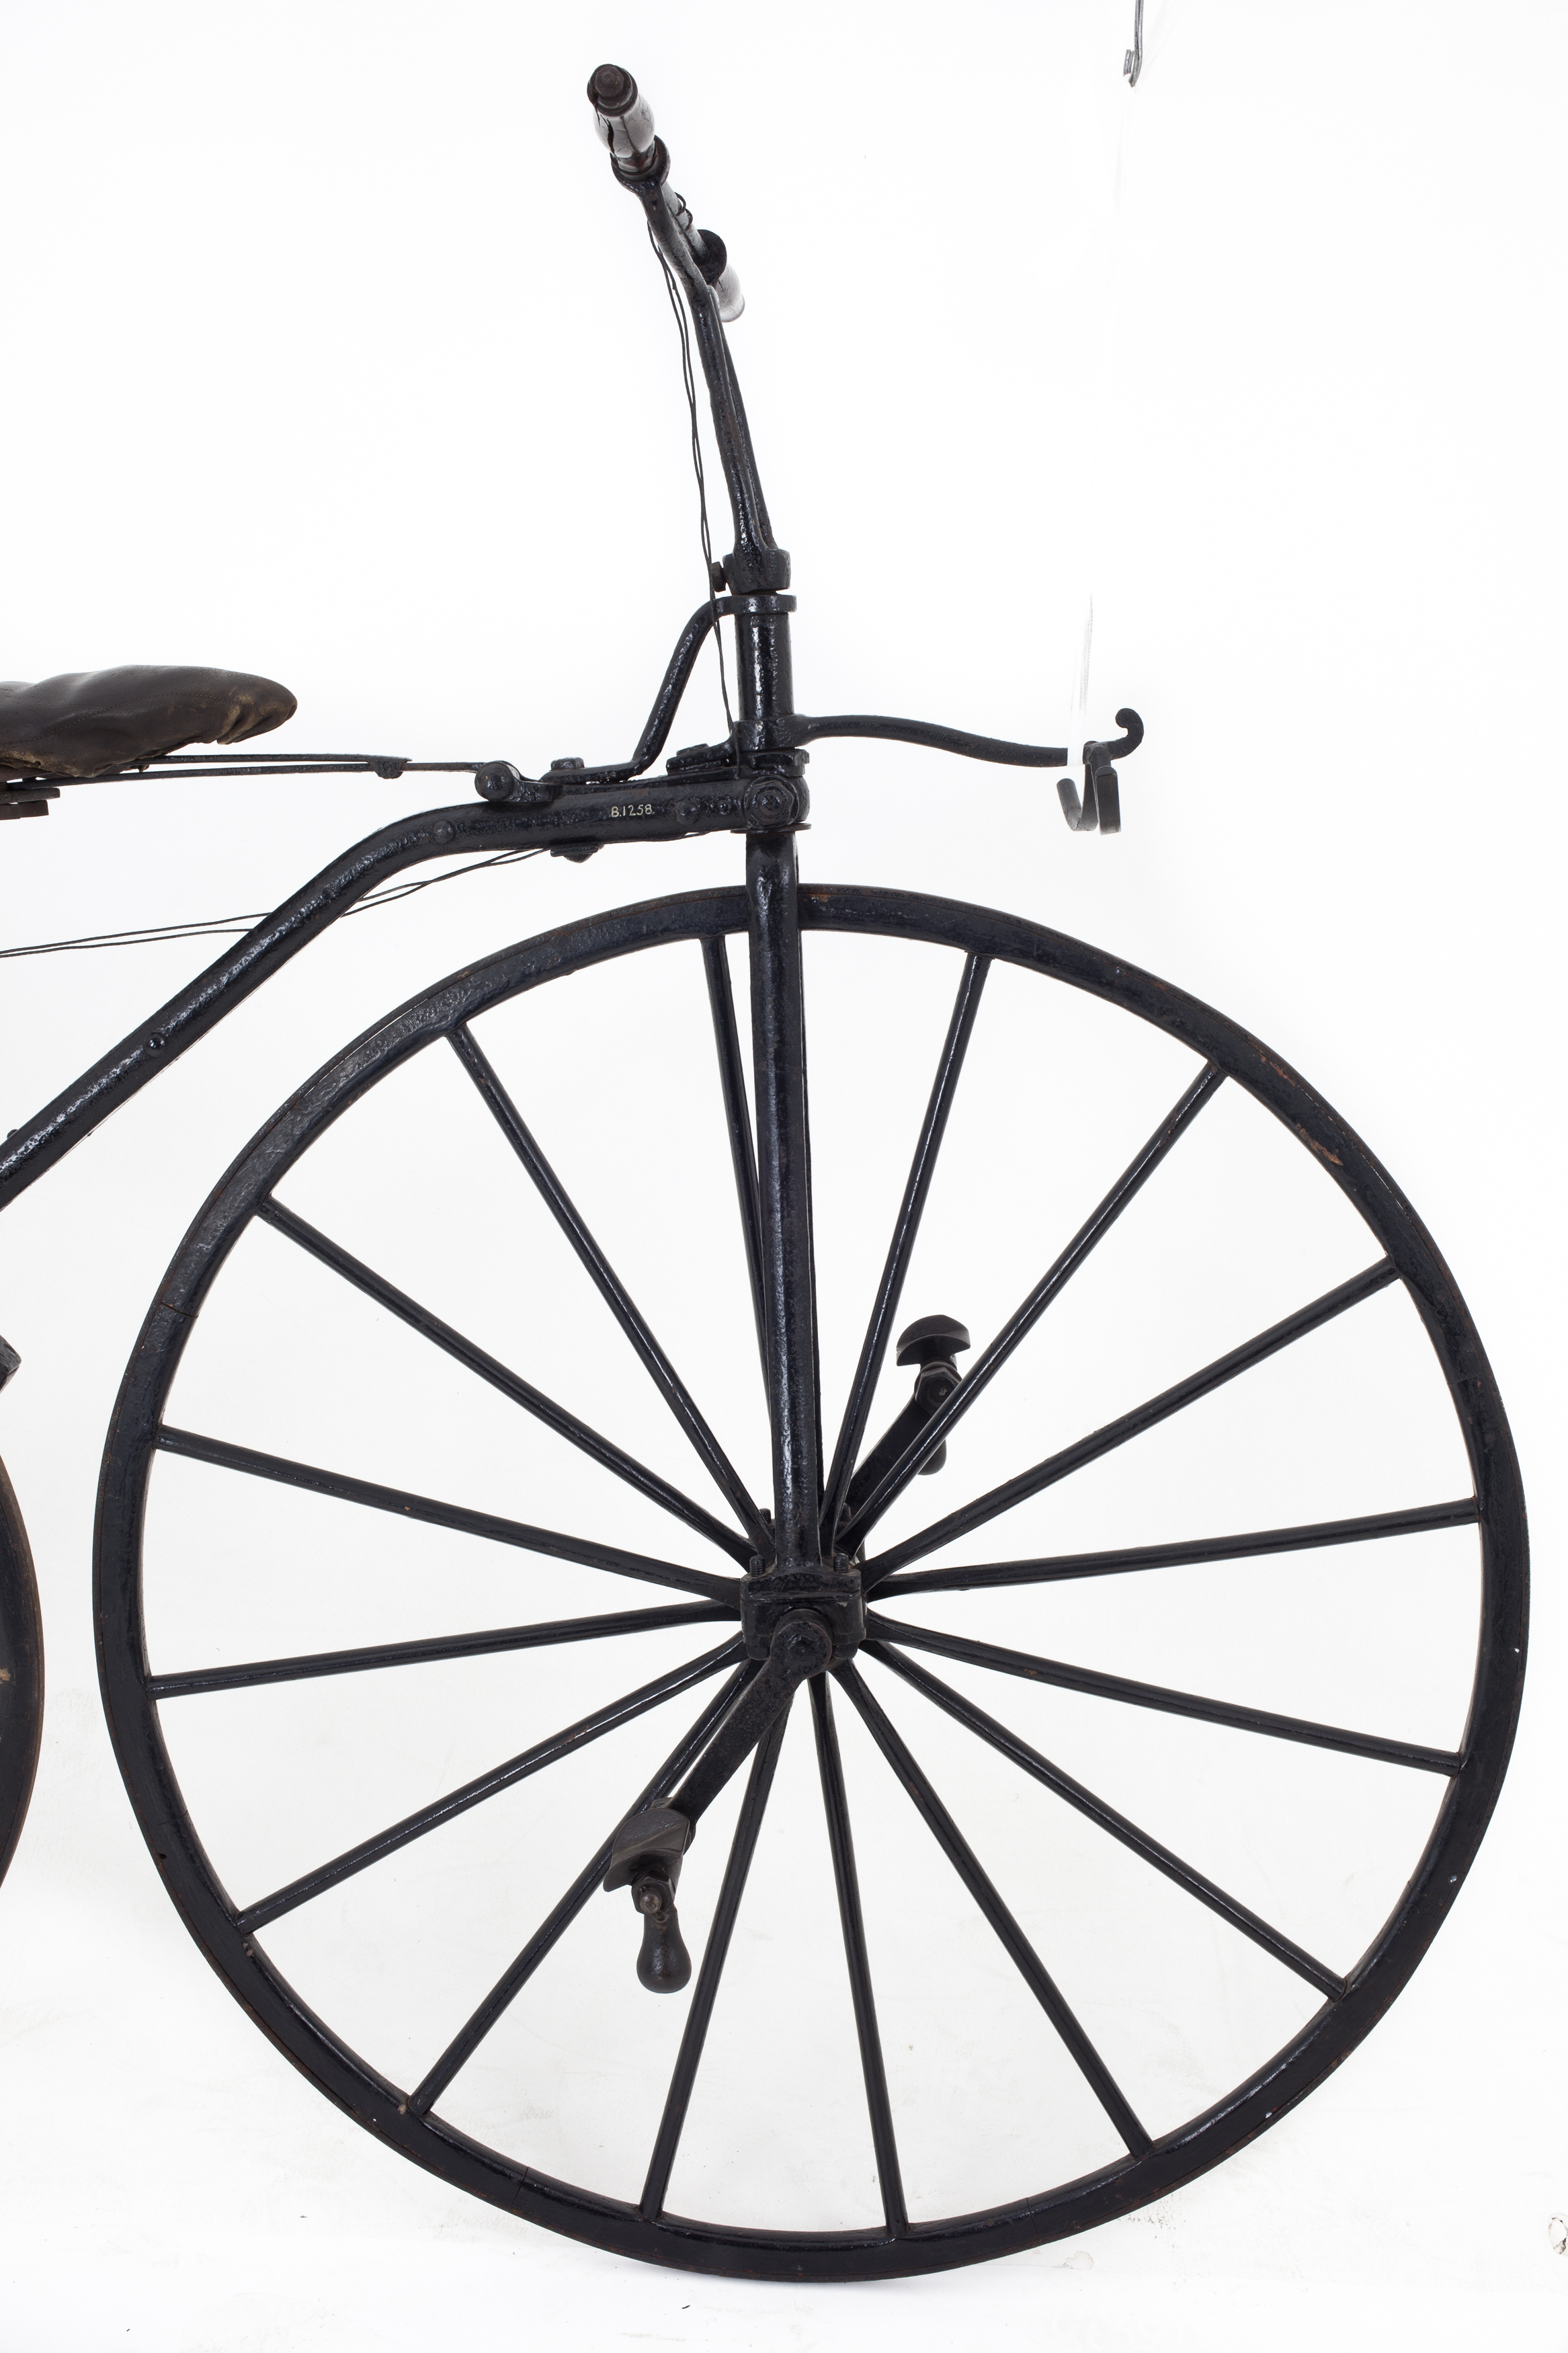 Michaux-type Velocipede boneshaker bicycle